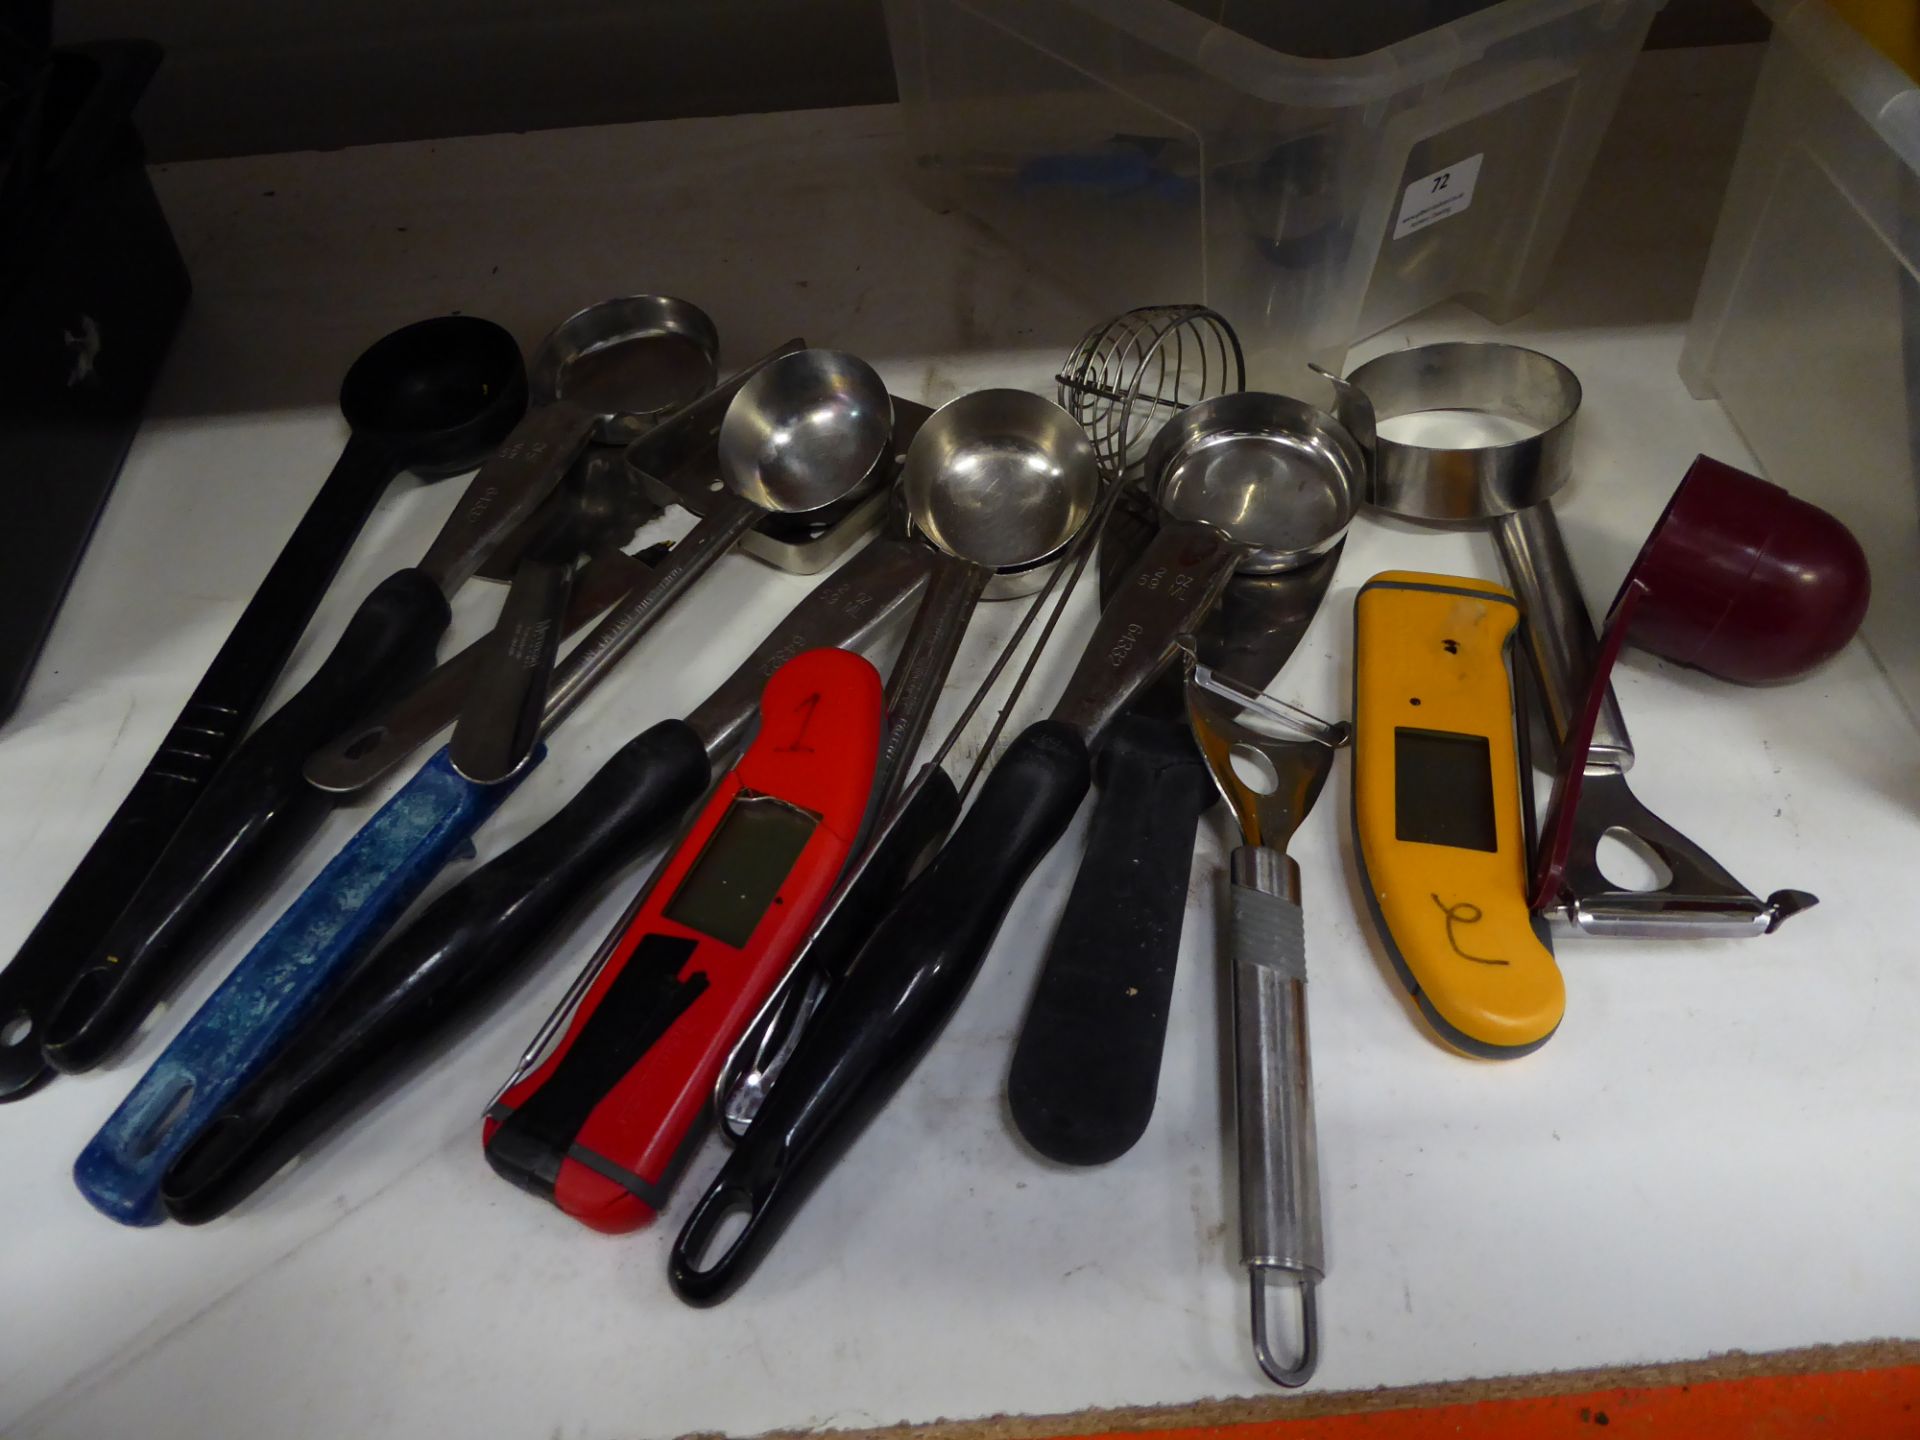 * assorted utensils